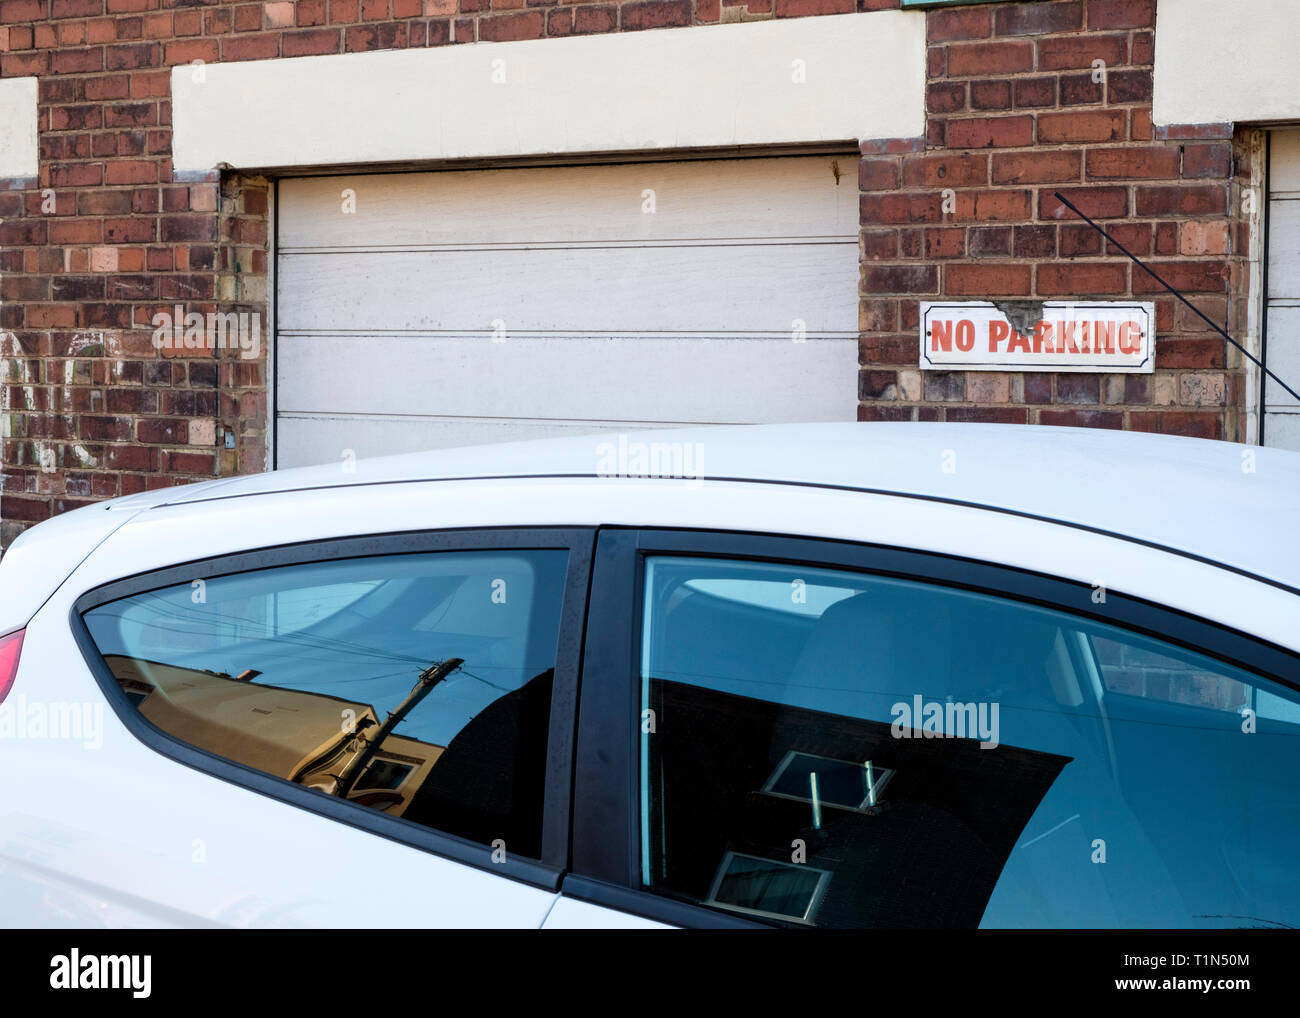 Voiture garée en face d'un No Parking sign, Lancashire, England, UK Banque D'Images